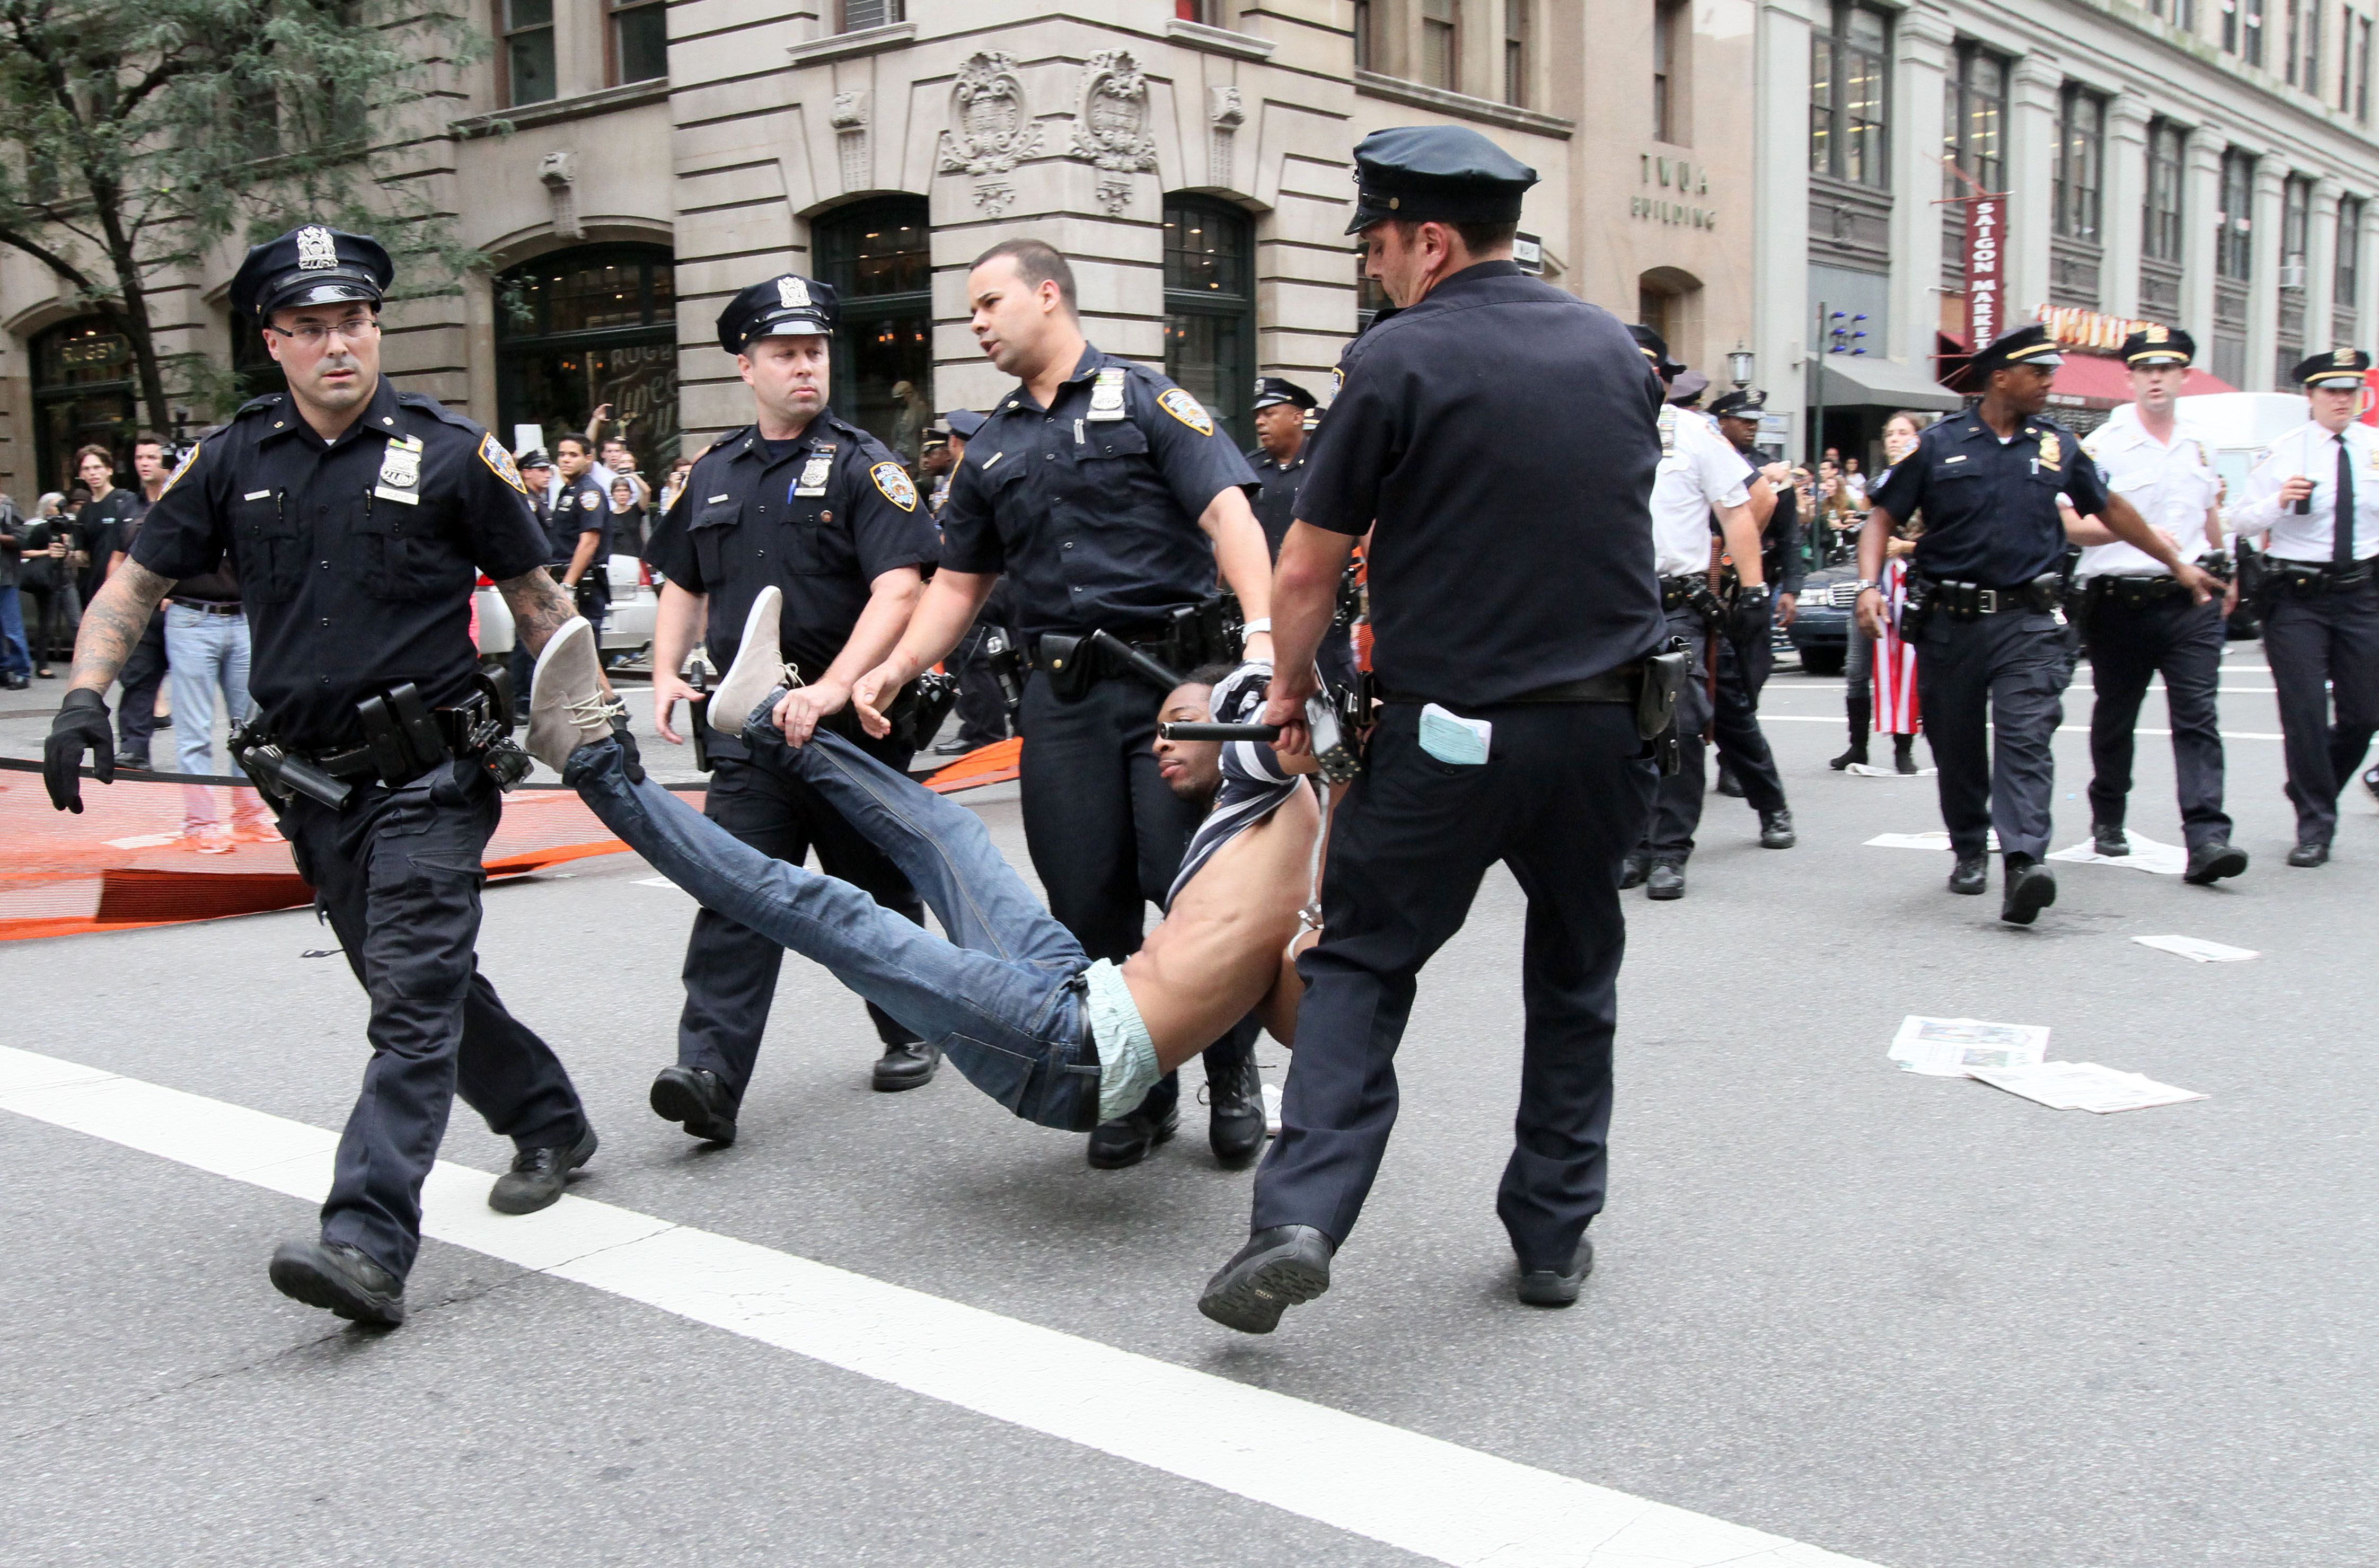 En av demonstranterna bärs bort av polisen som grep in mot en marsch på lördagen.